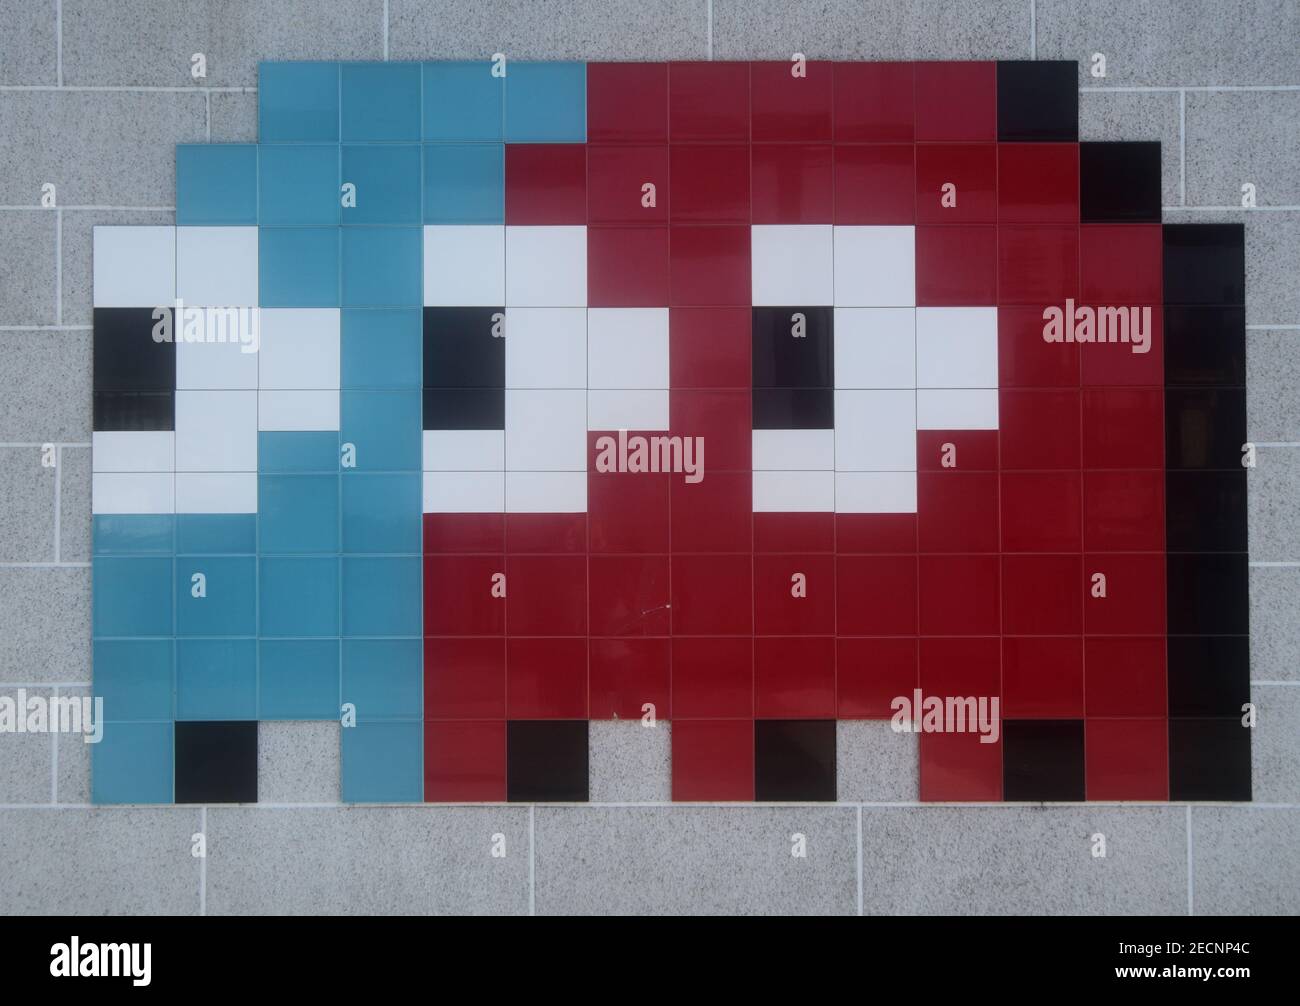 Verpixeltes Bild von Pac man Spielfigur Inky und Blinky, von Fliesen gebildet und an der Wand montiert Stockfoto